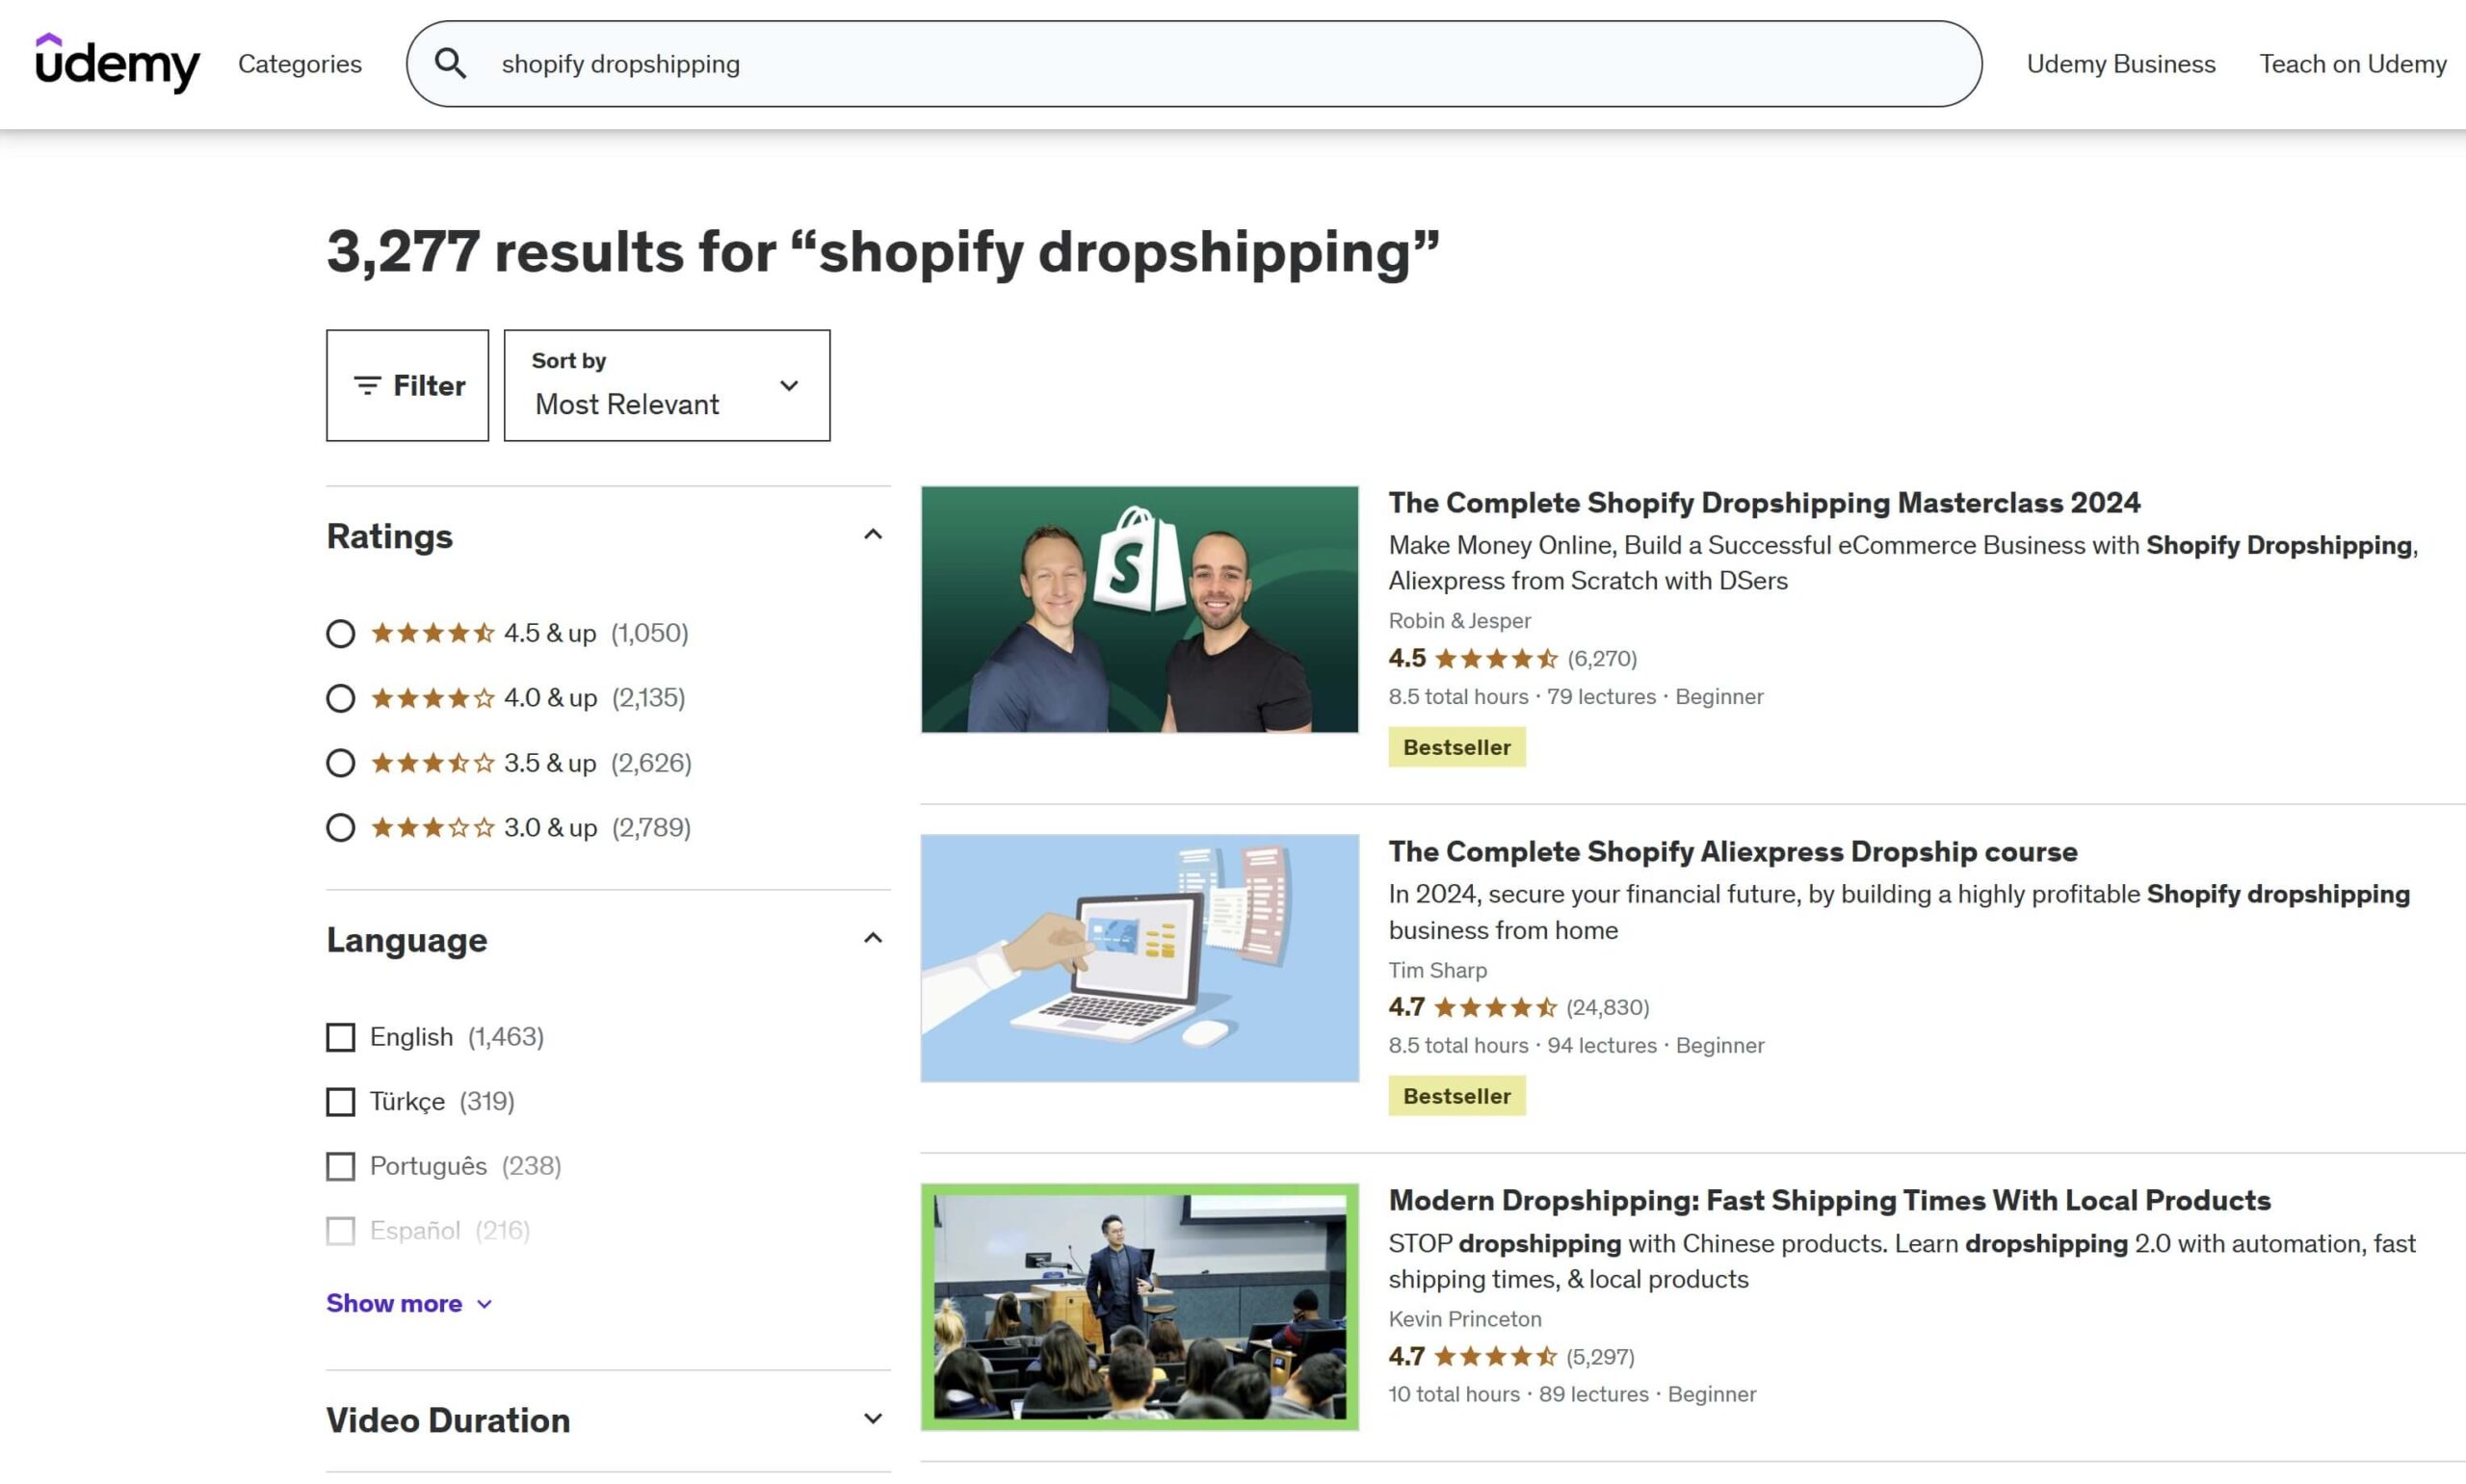 Resultados de pesquisa do Shopify Dropshipping na Udemy